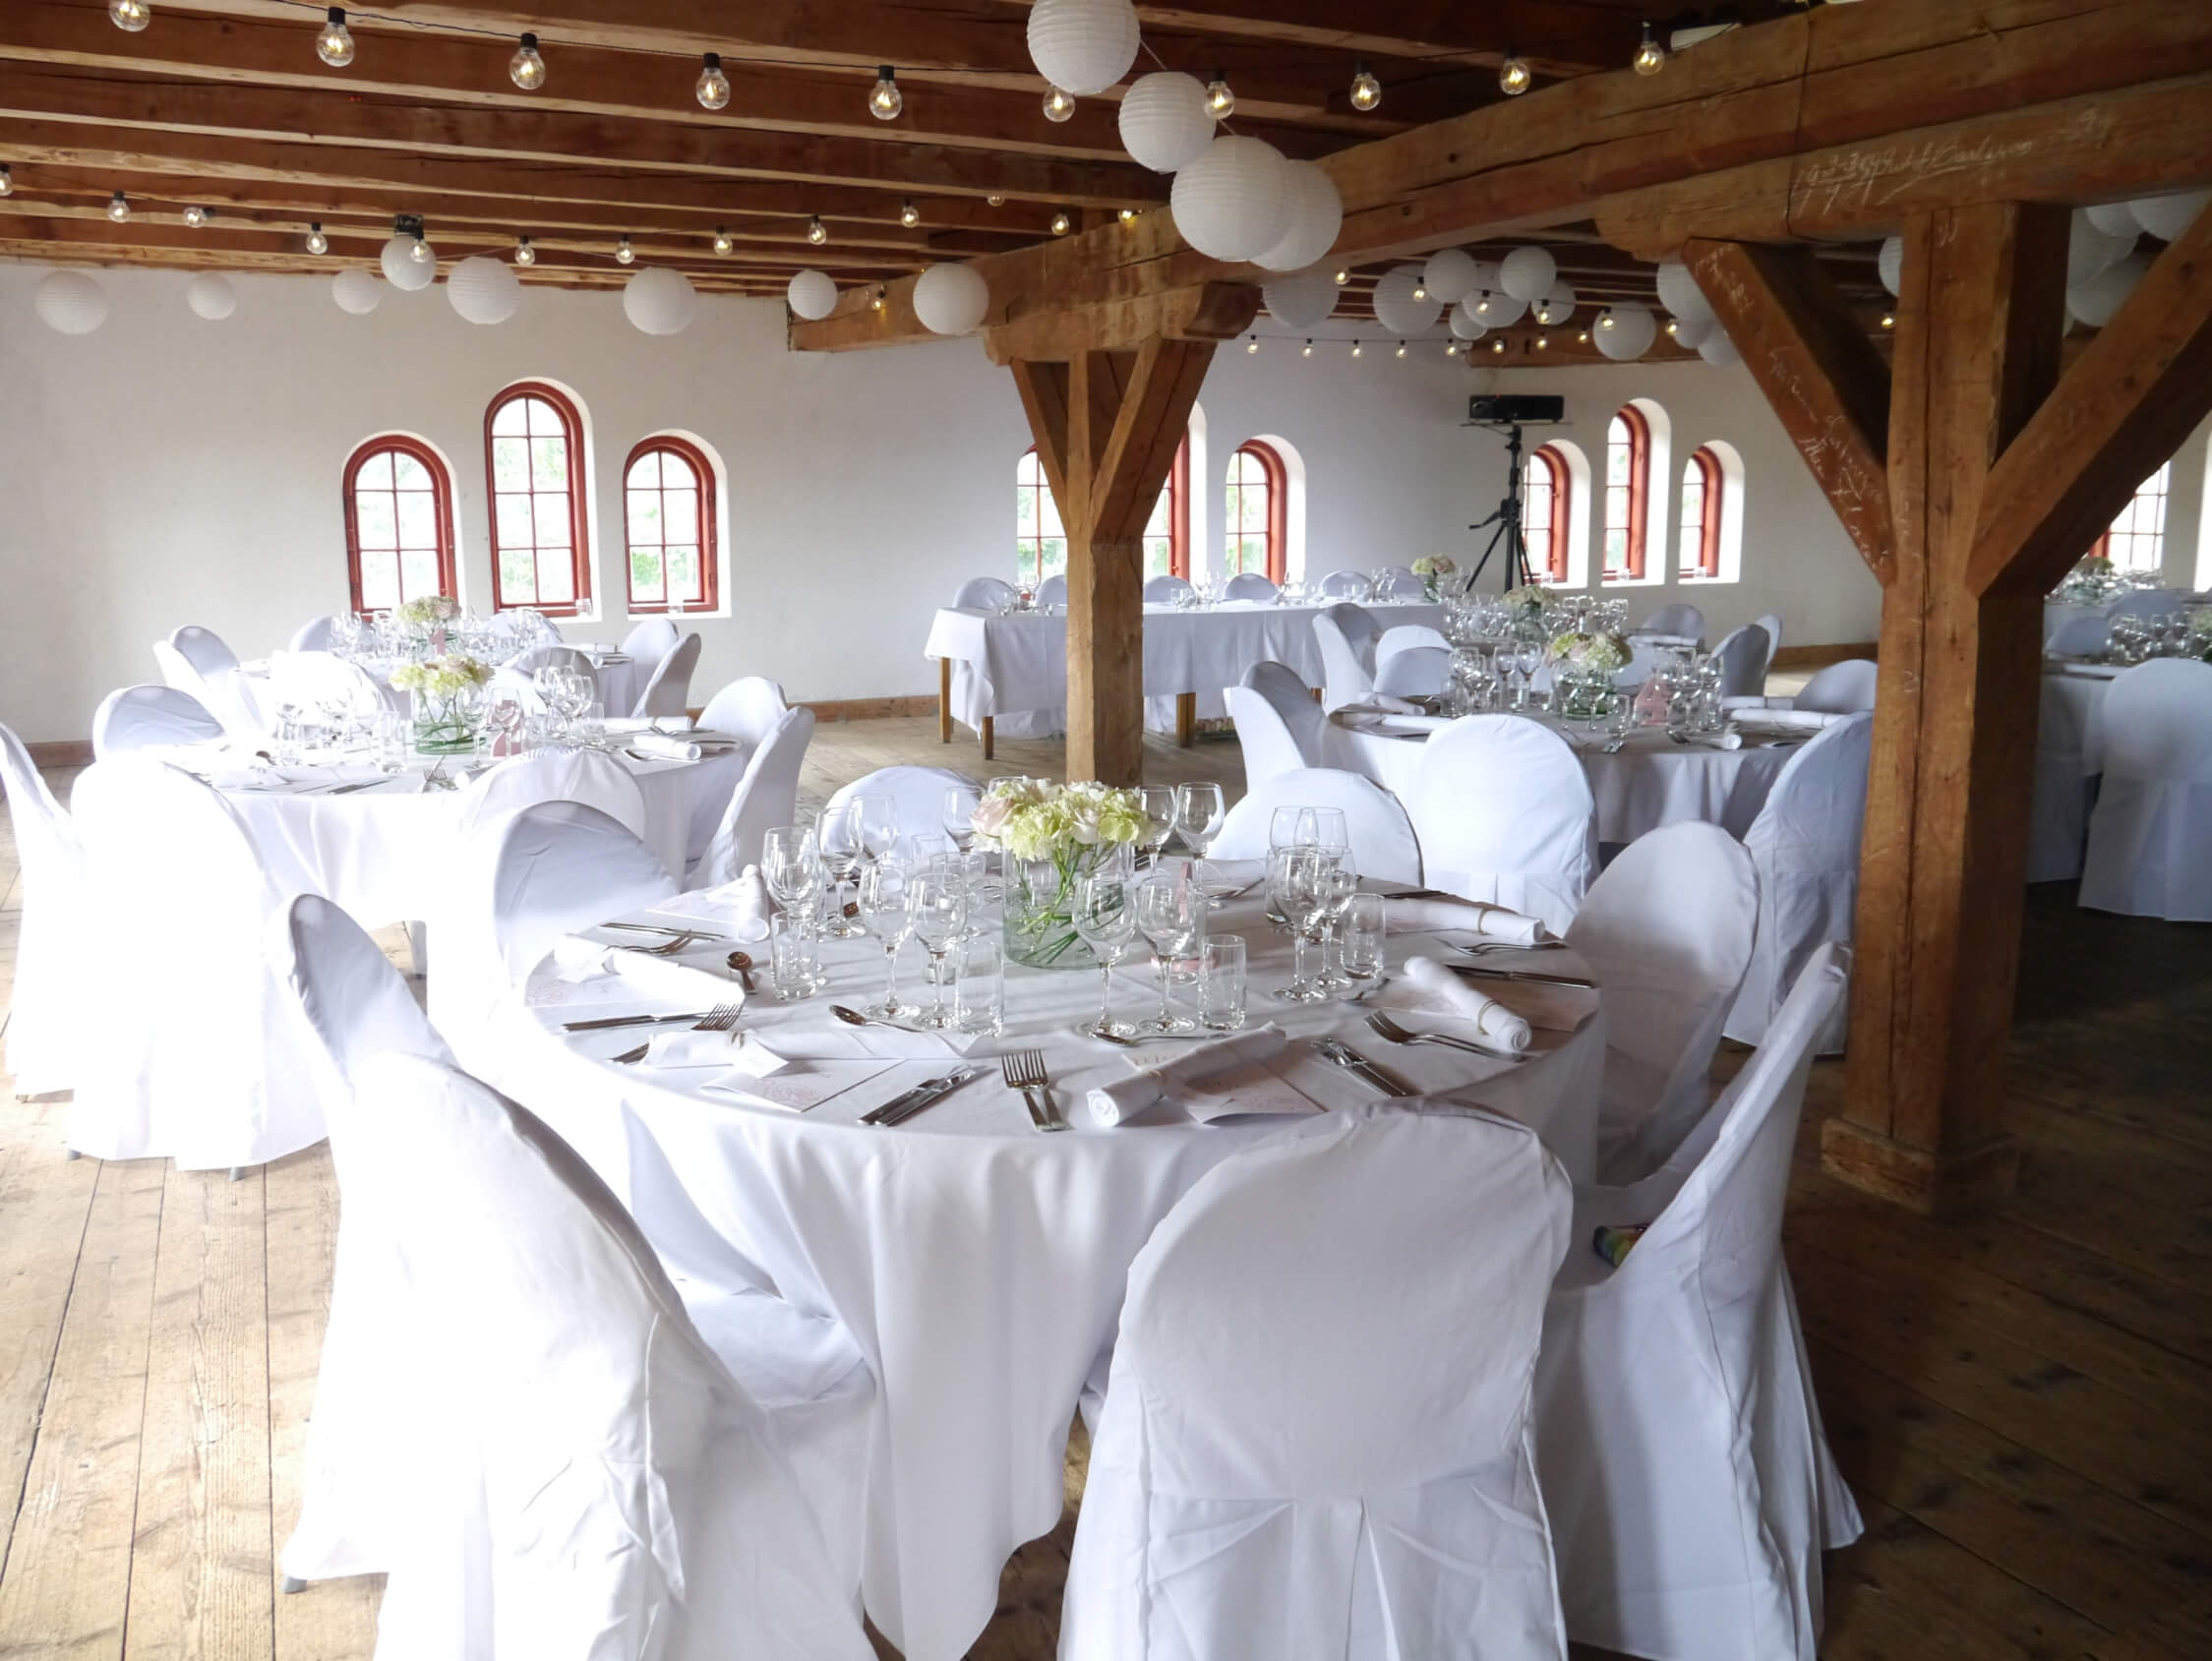 Magasinet på Bjärka-Säby är den perfekta festlokalen för bröllop och andra stora firanden